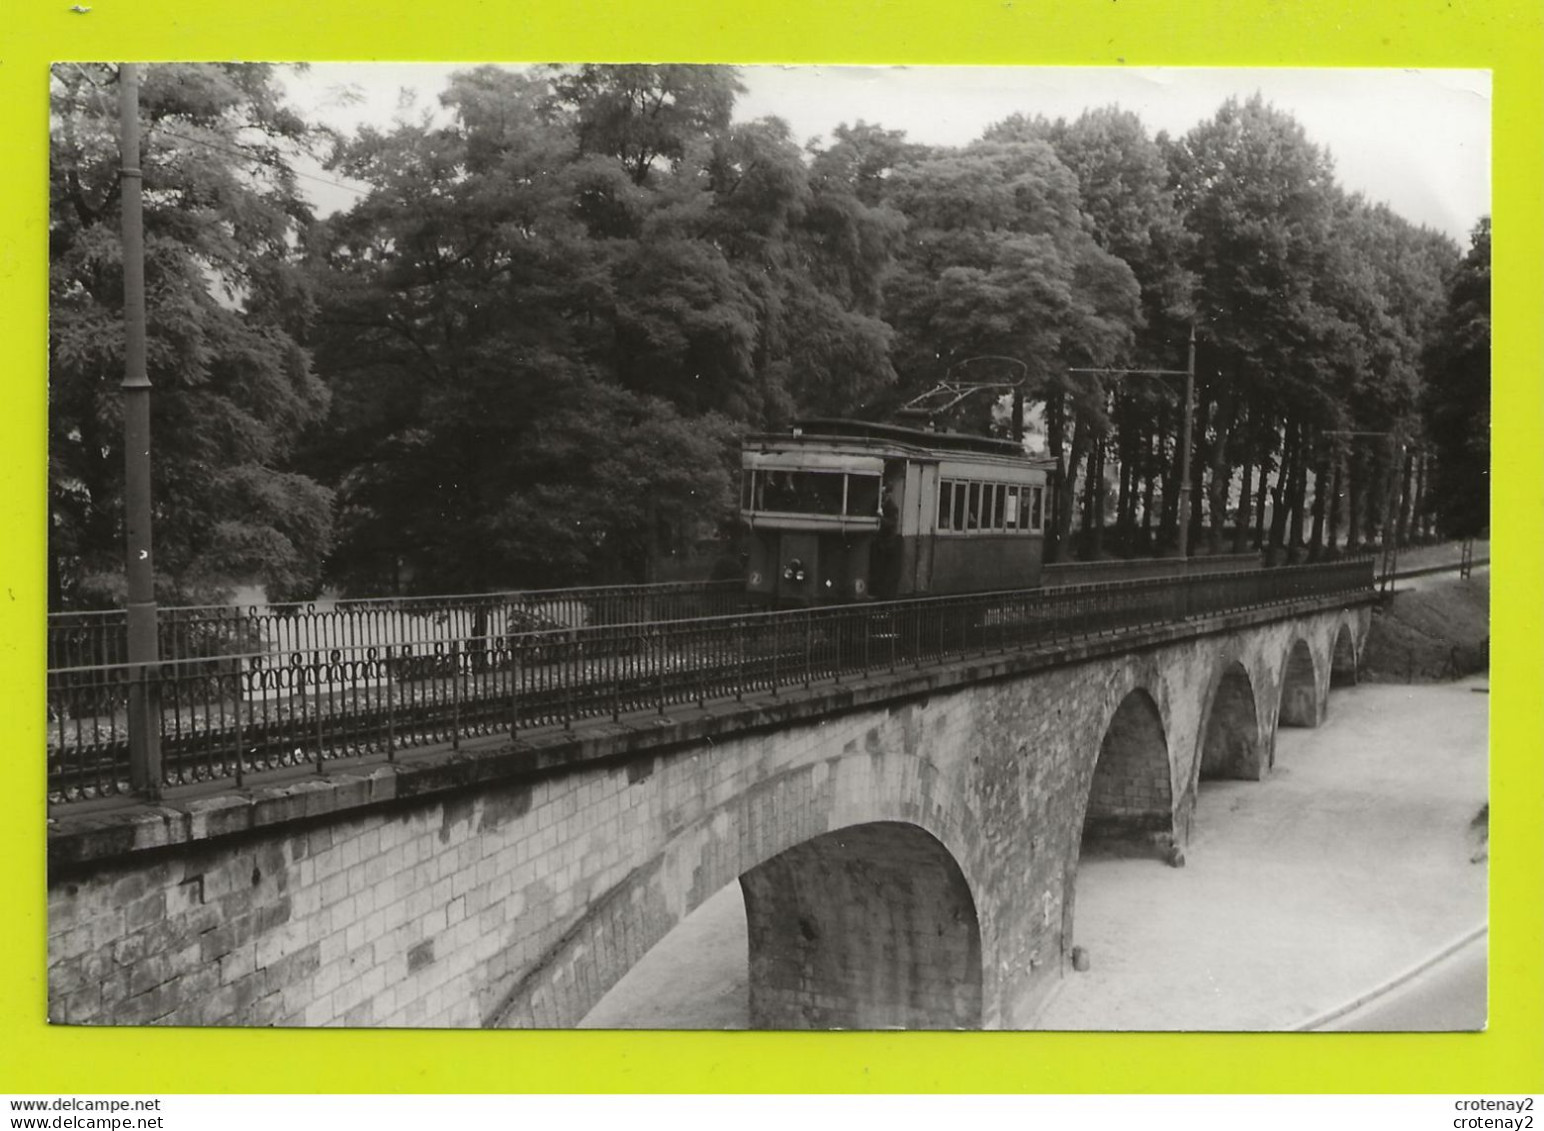 02 LAON PHOTO Originale TRAINS Wagon Tram Tramway Sur Pont VOIR DOS Non Daté Photo M. Geiger - Eisenbahnen